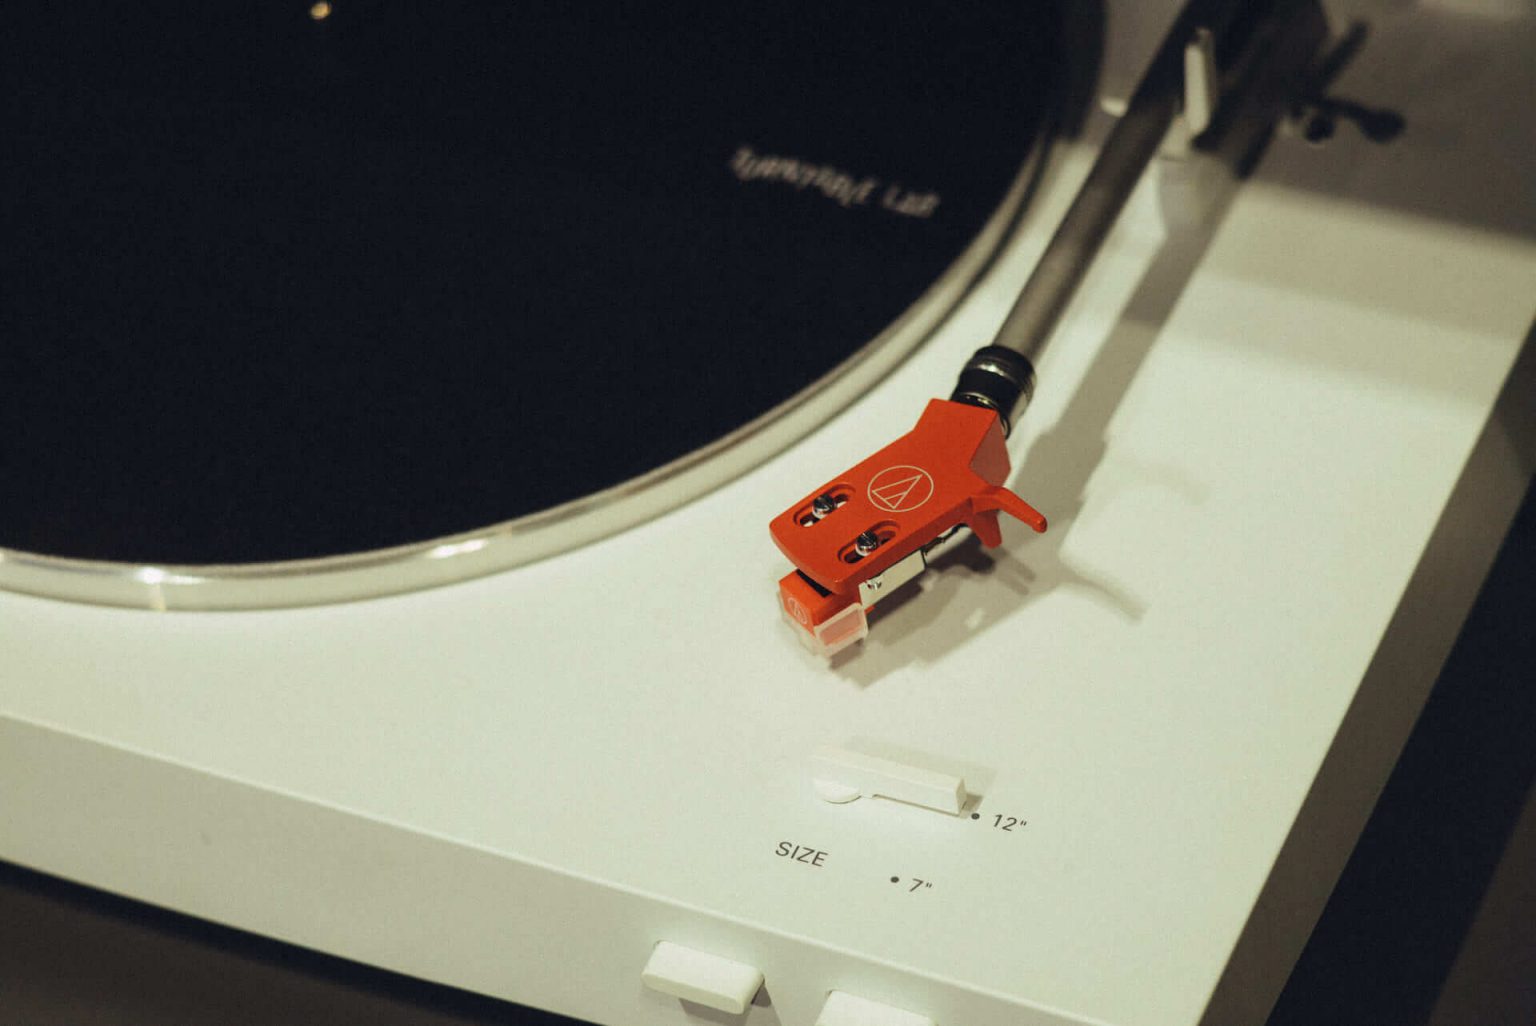 1999年、NYC・大学寮の一室で始まったレコードショップの現在。すべてのDJに開かれた店「Turntable Lab」